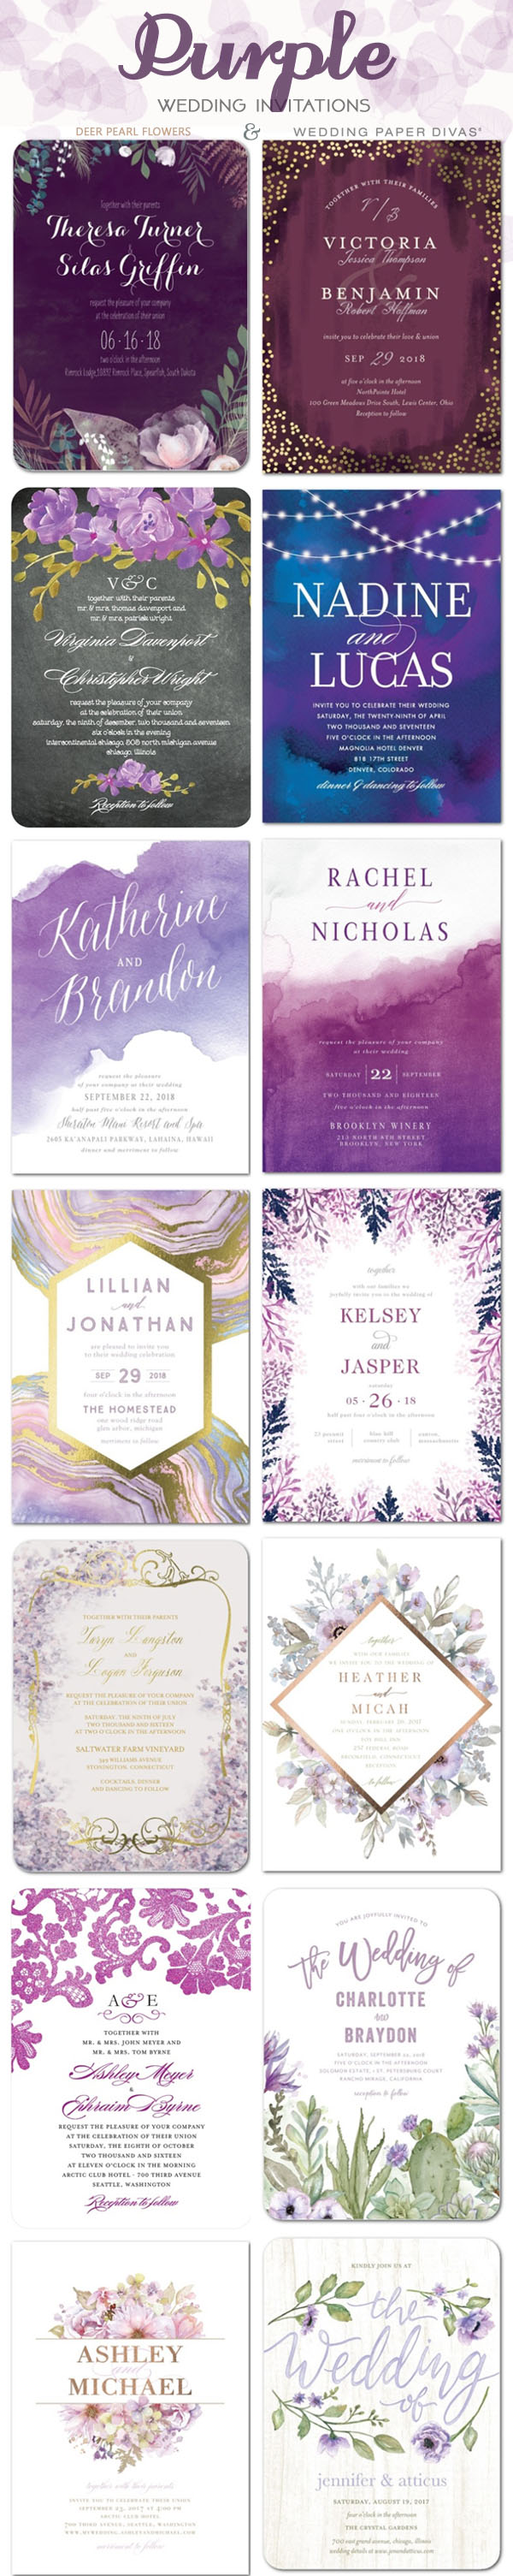 Purple wedding color ideas - Purple wedding invitations